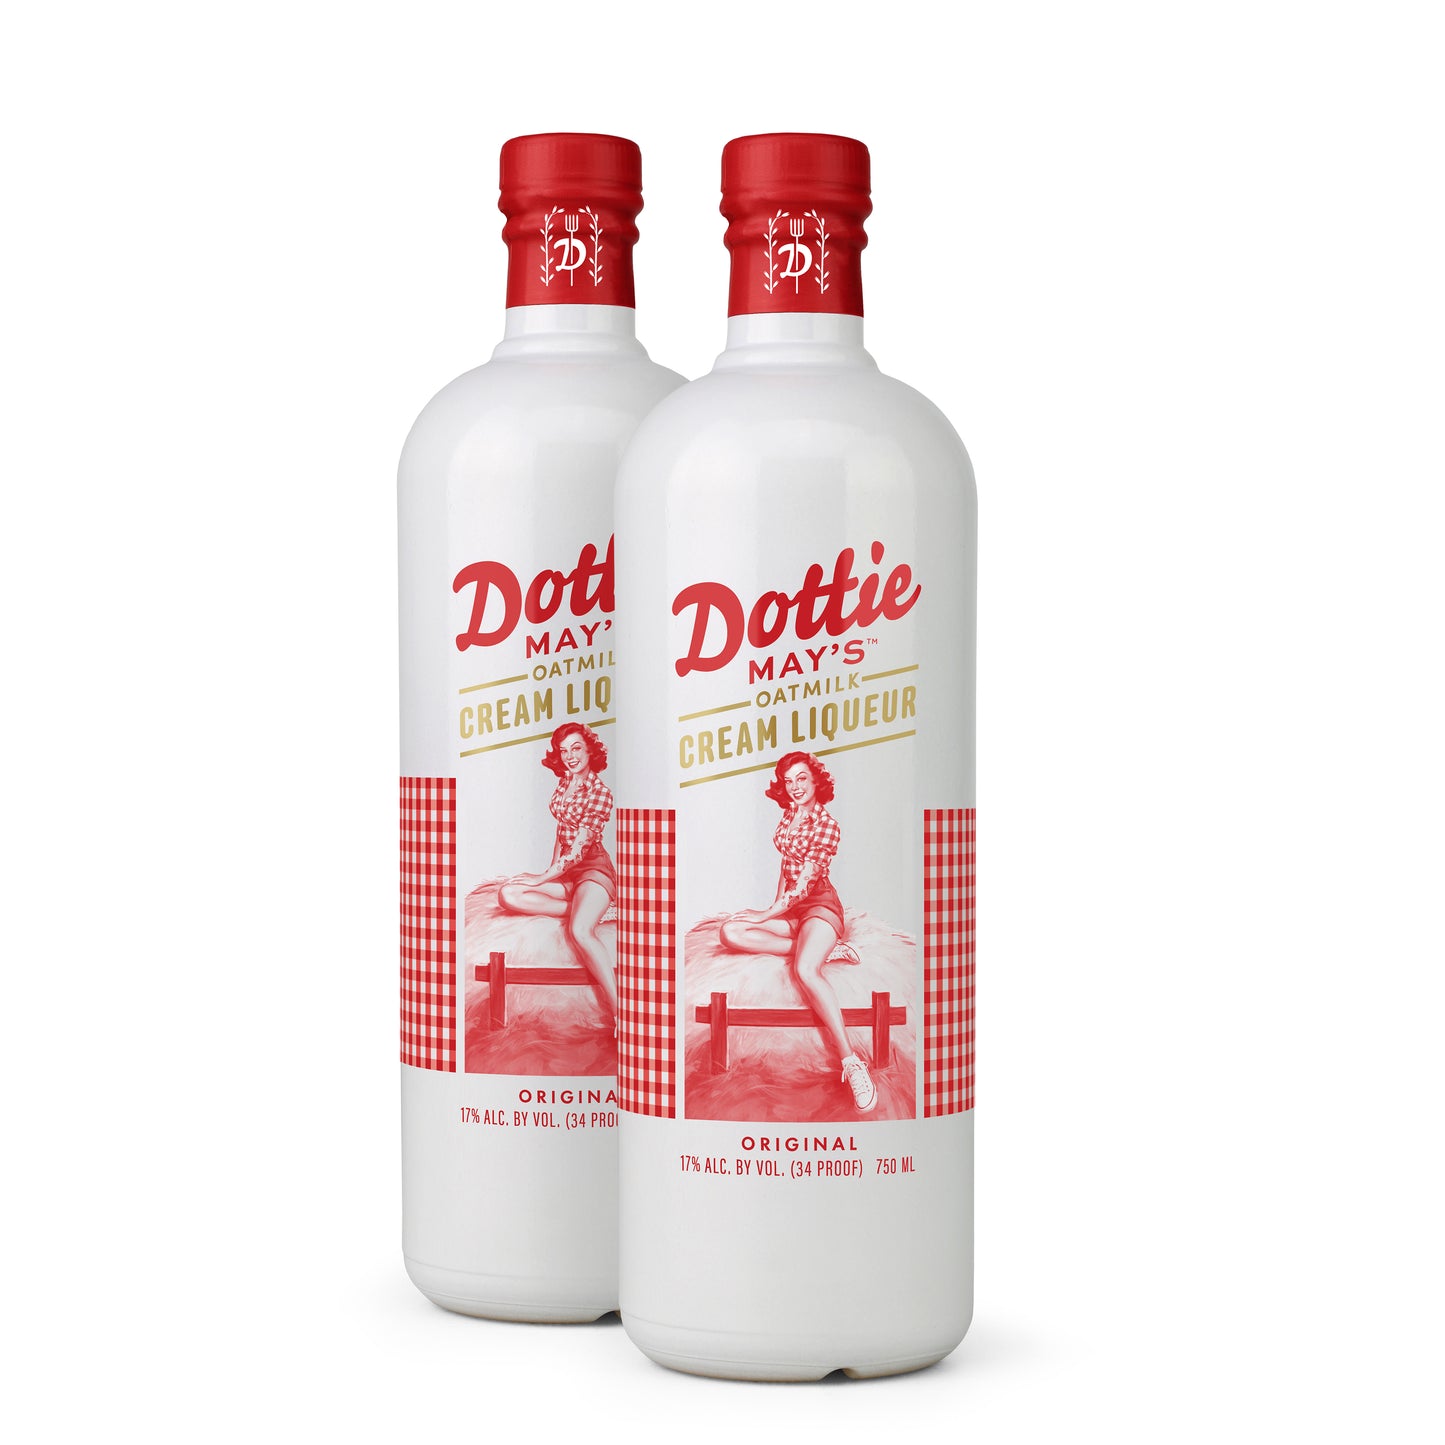 Dottie May\'s™ Oatmilk Cream Liqueur (2 Bottles) – Drink Dotties